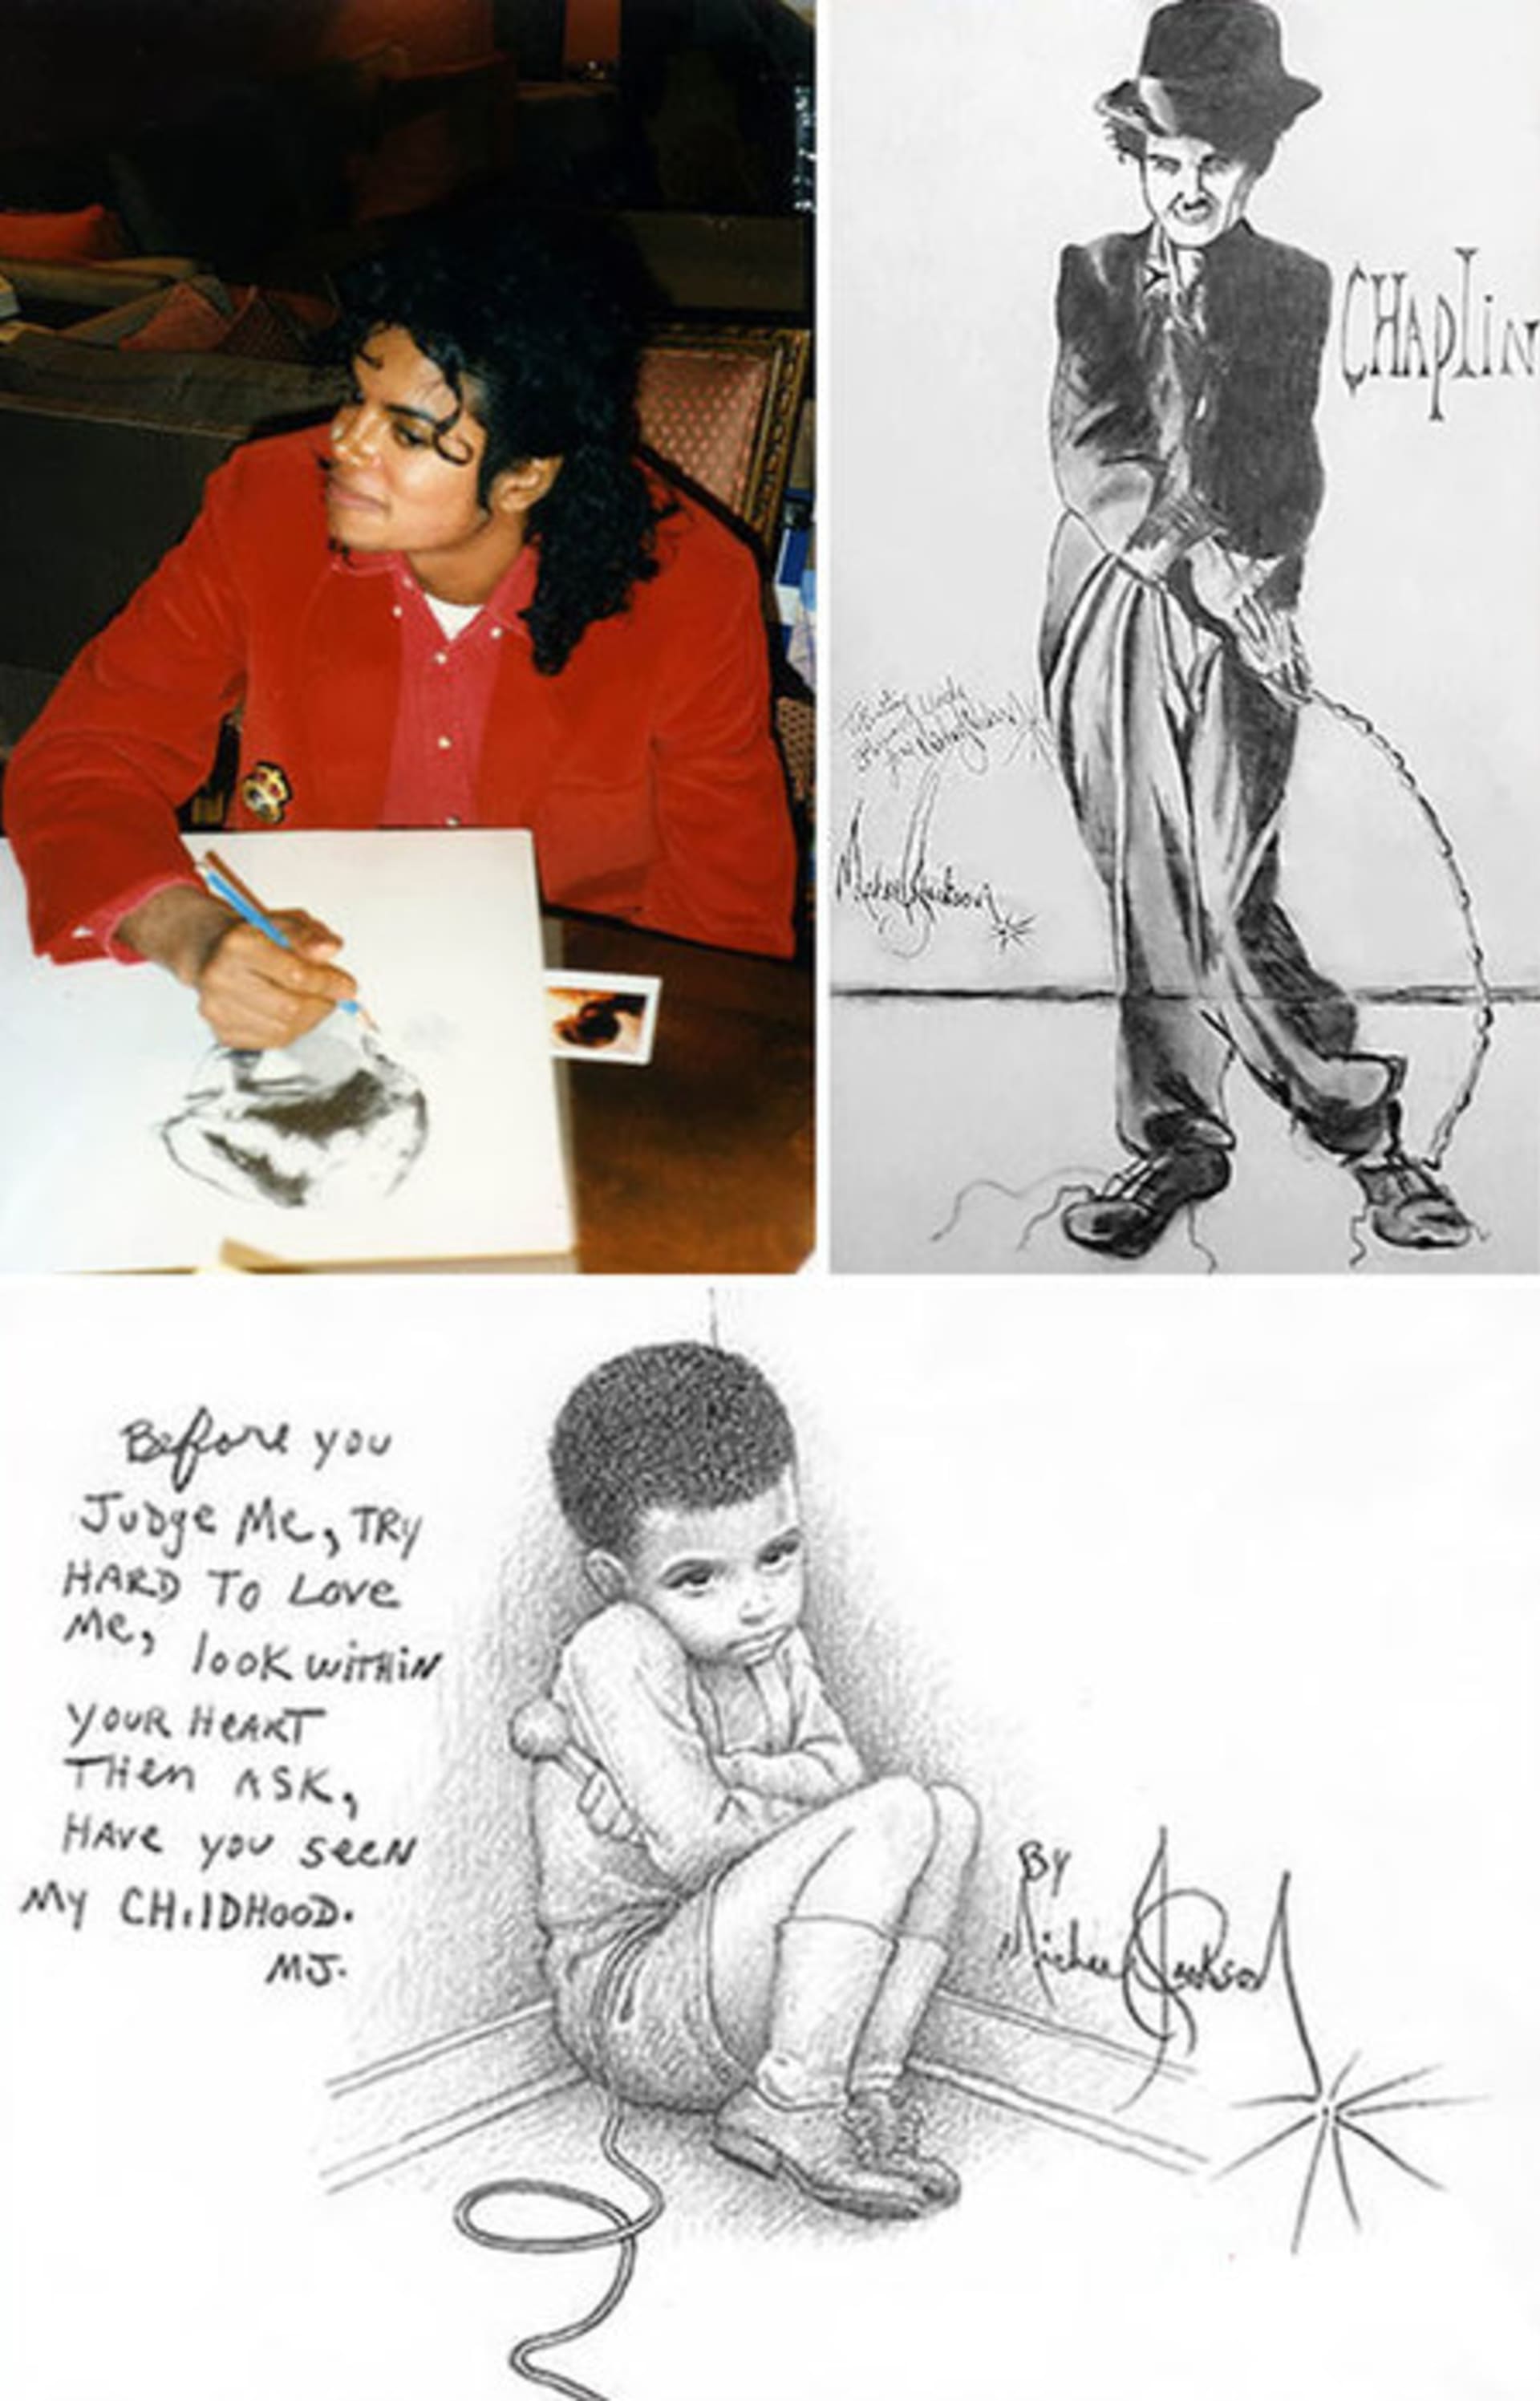 Michael Jackson měl raději prostou kresbu tužkou.